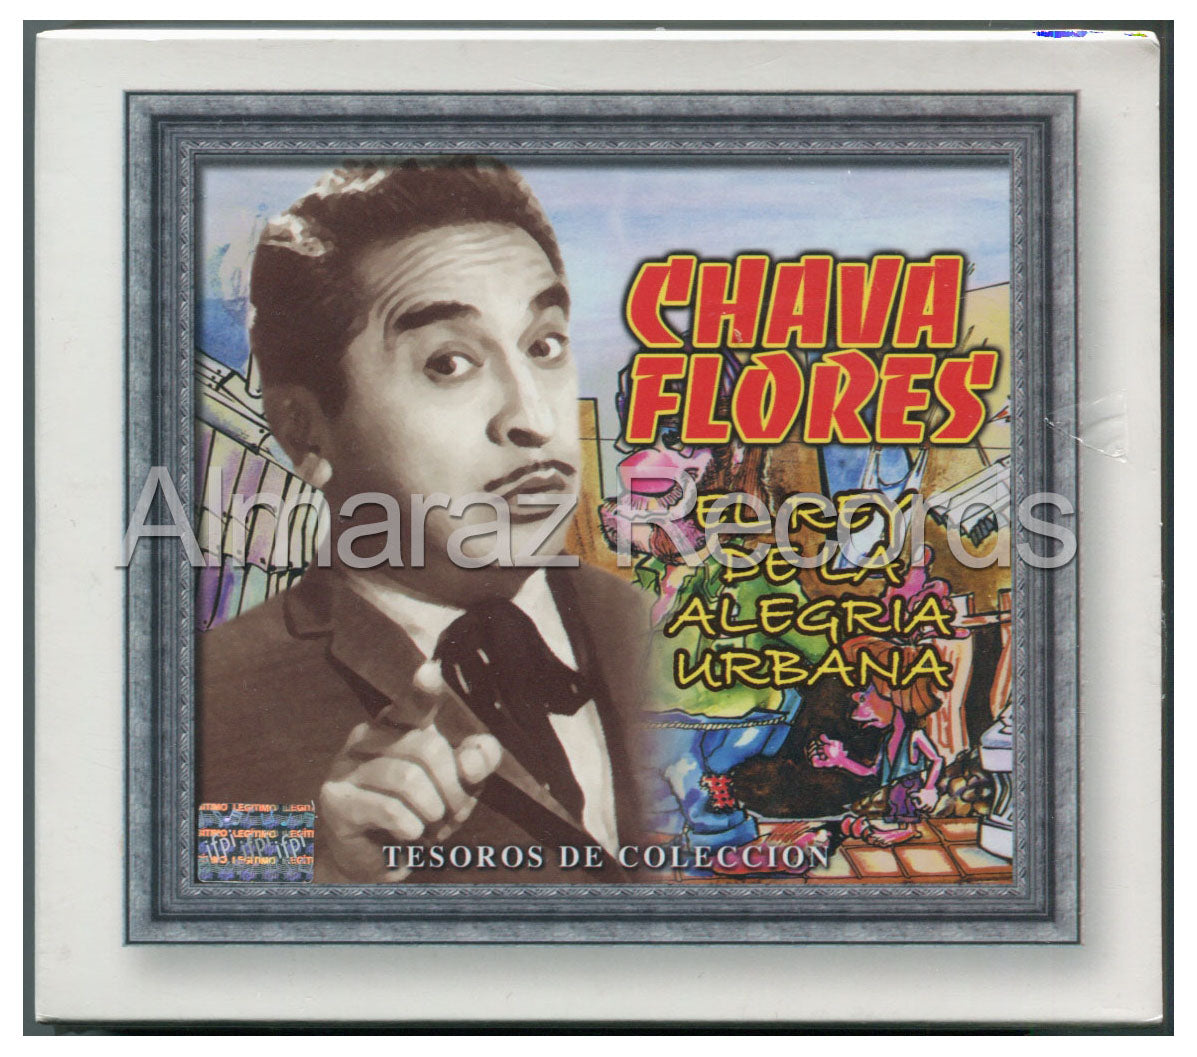 Chava Flores Tesoros De Coleccion El Rey De La Alegria Urbana 3CD - Almaraz Records | Tienda de Discos y Películas
 - 1